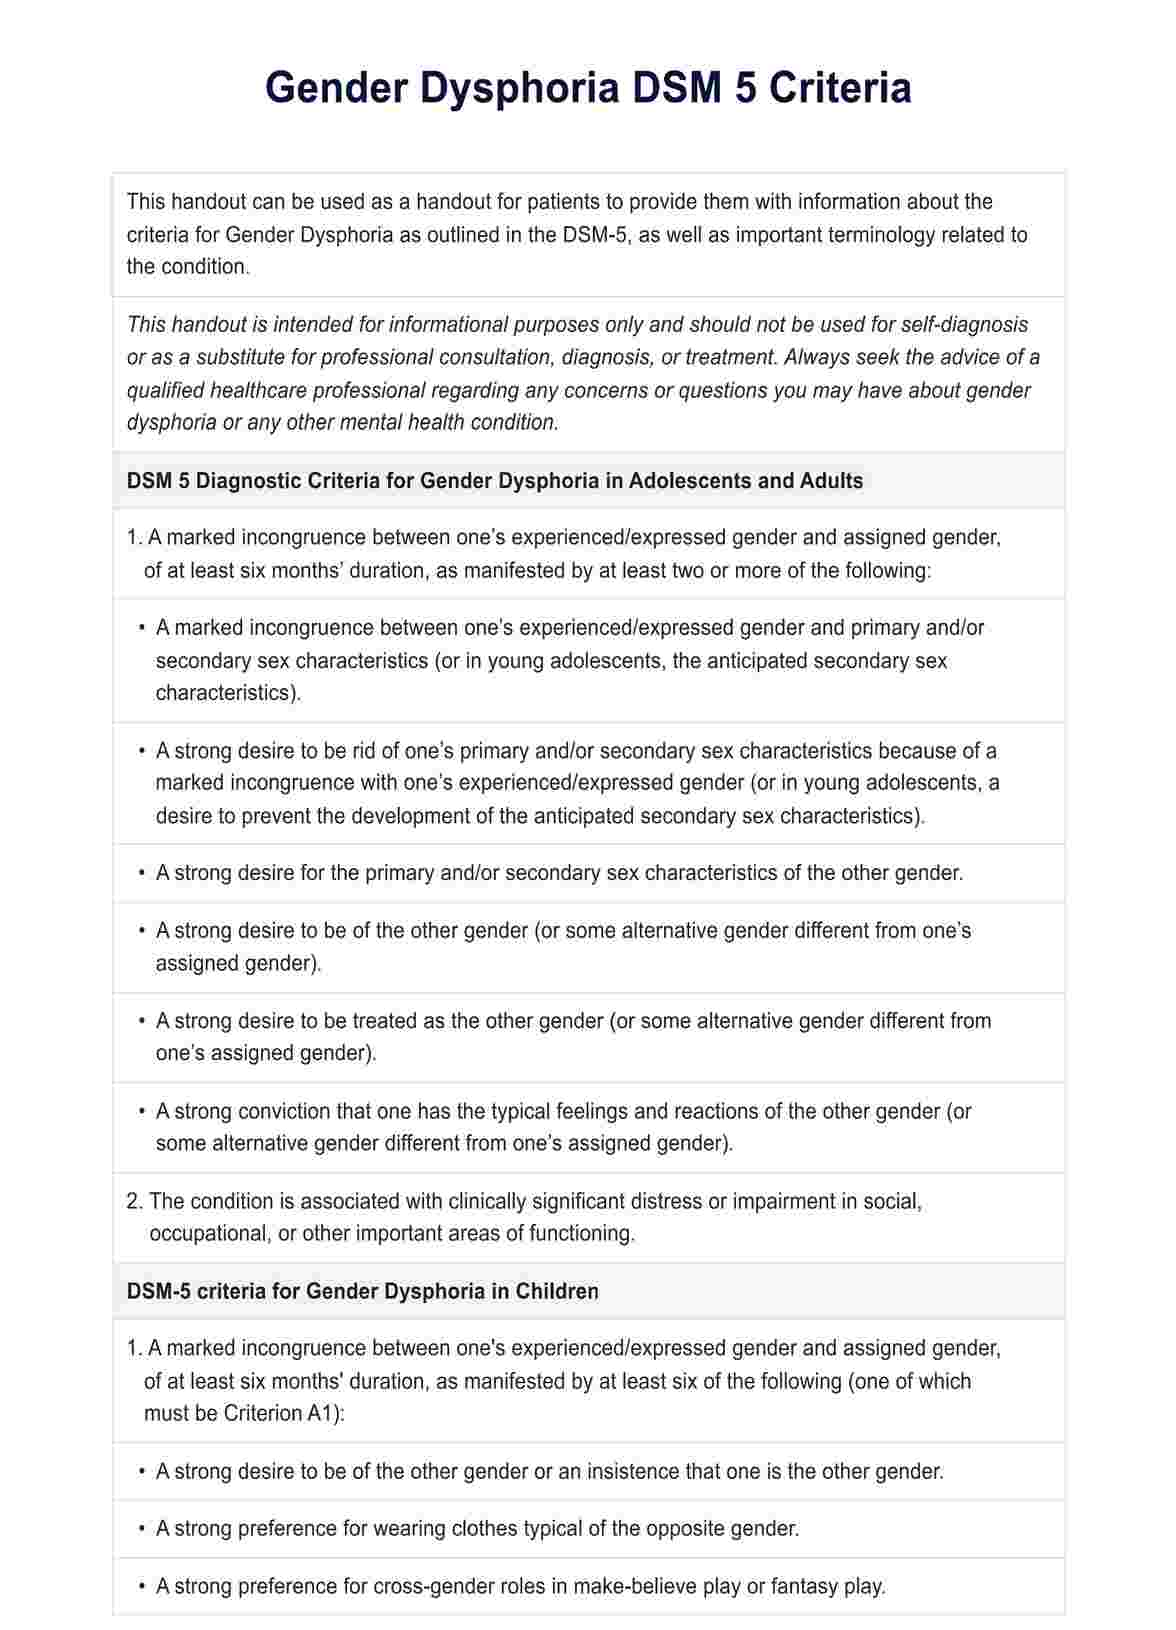 Gender Dysphoria DSM 5 Criteria PDF Example